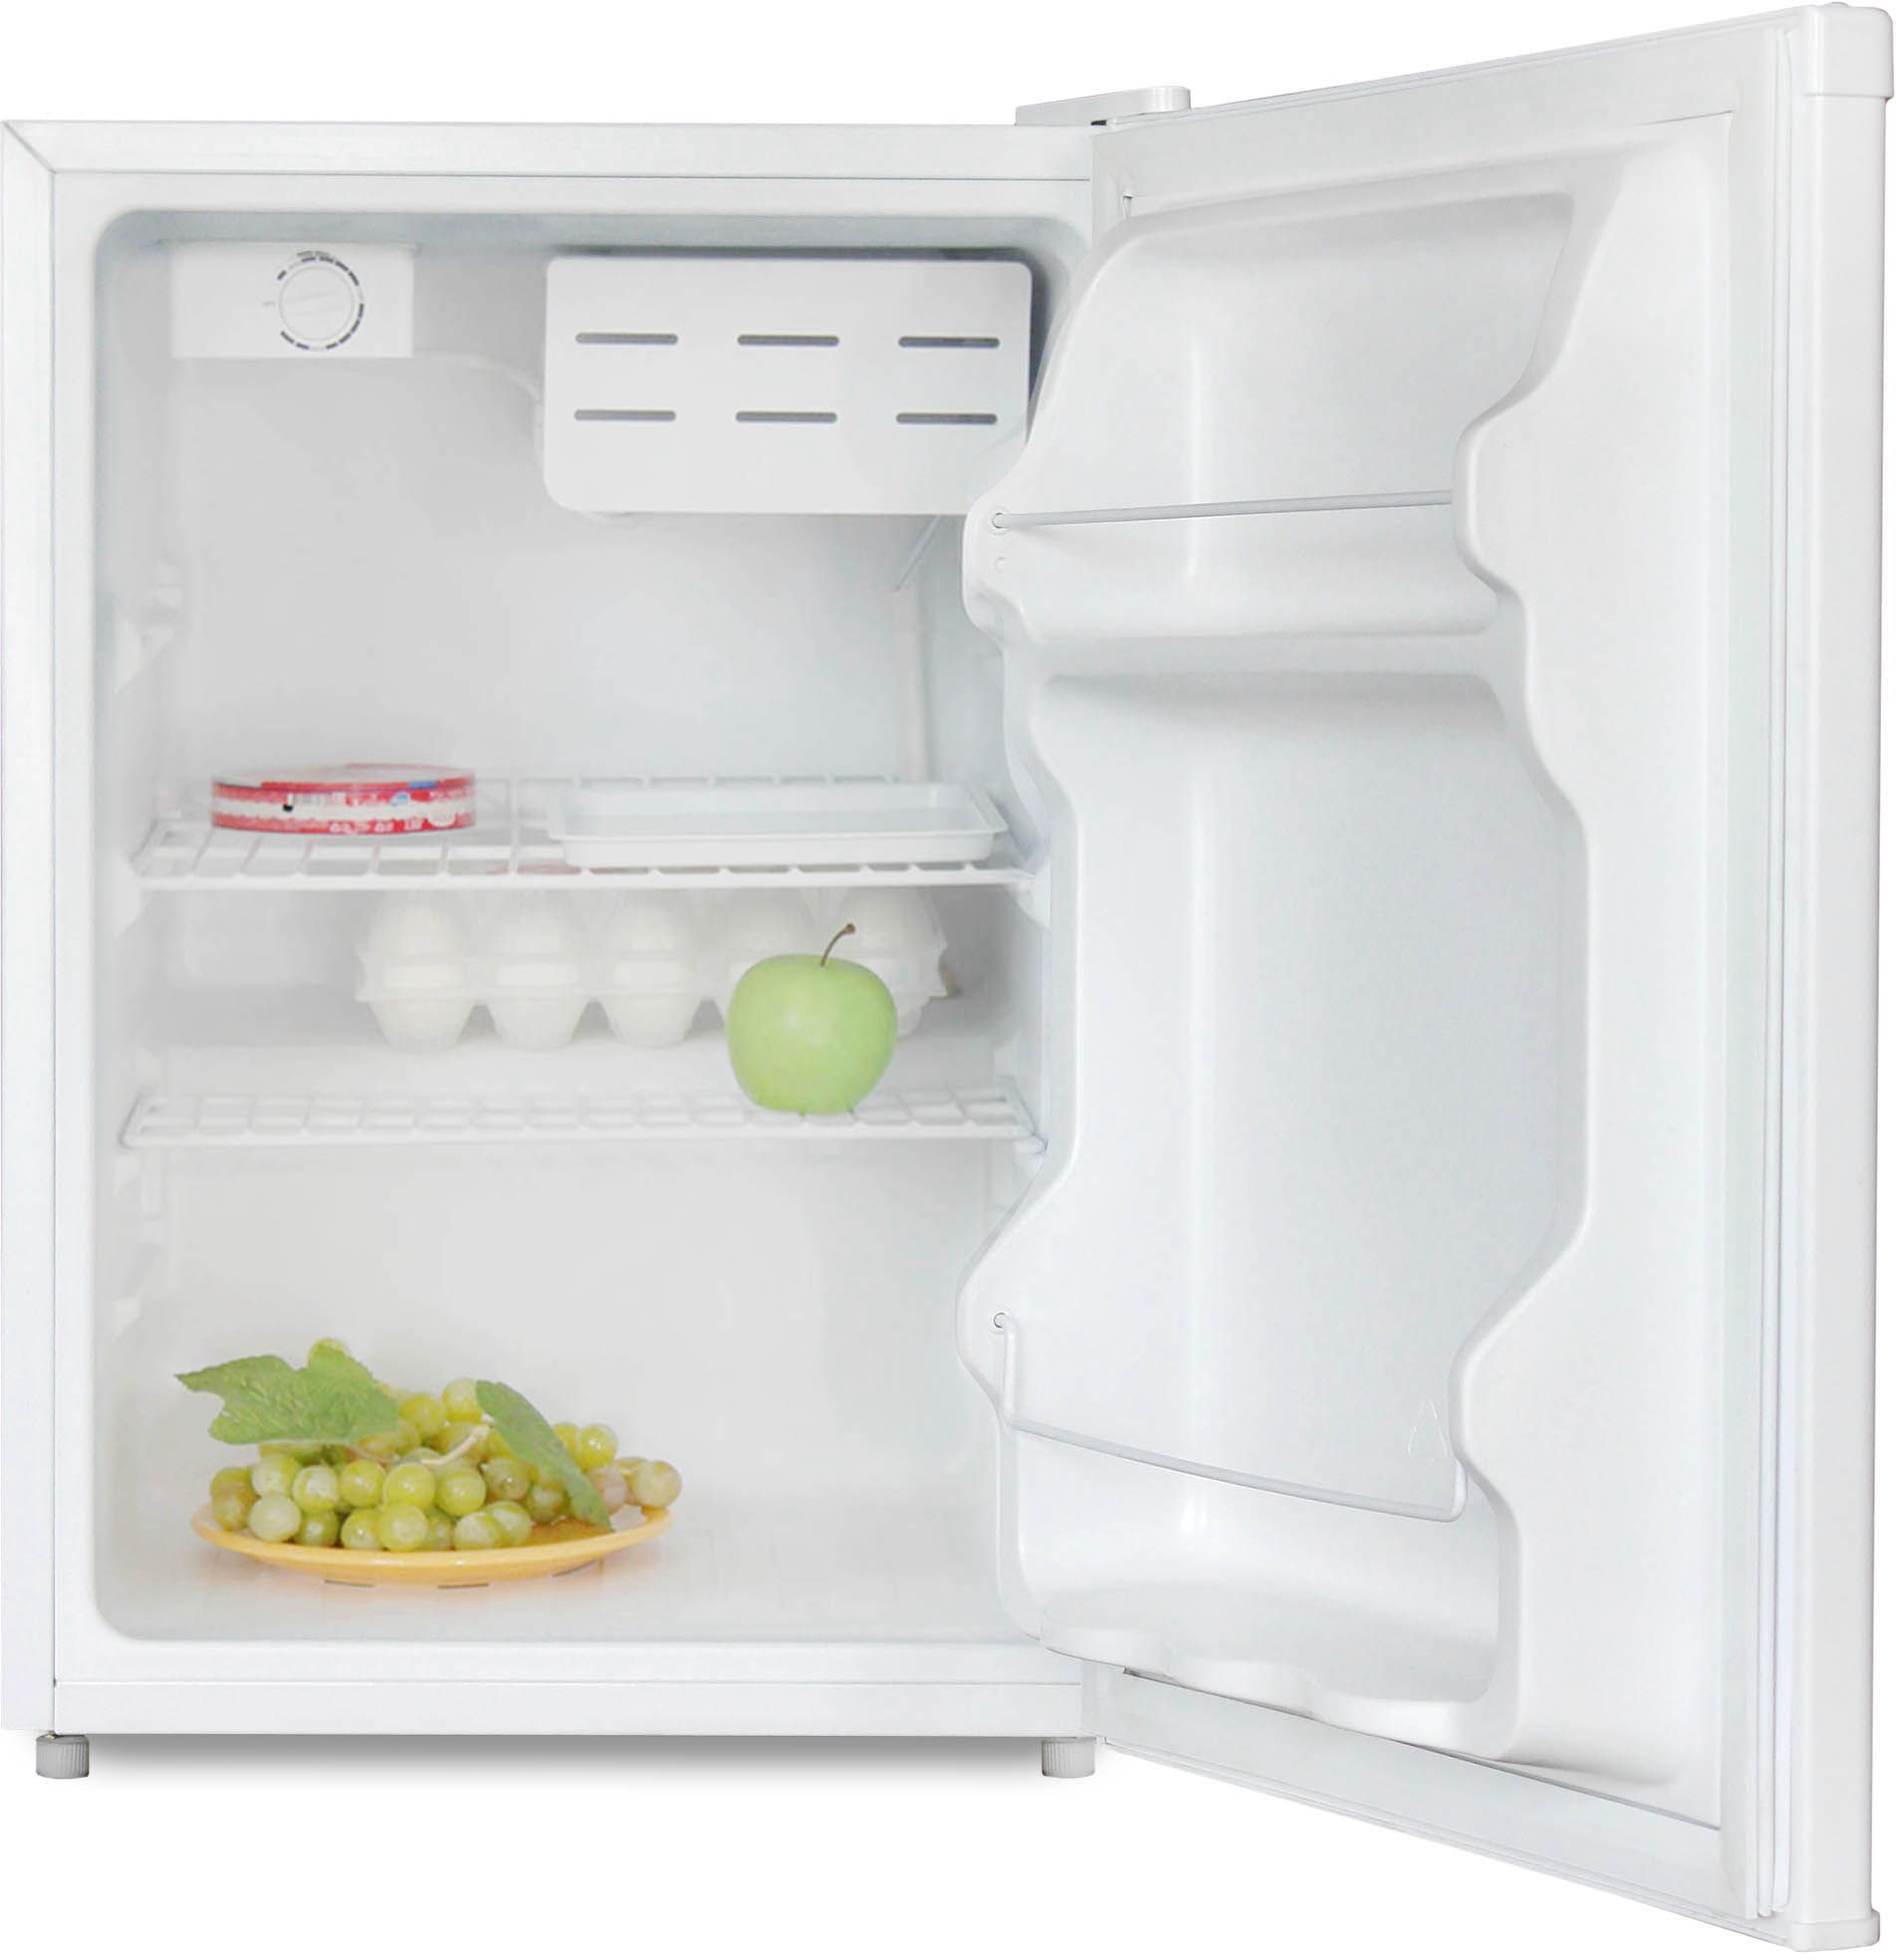 холодильник бирюса 70, купить в Красноярске холодильник бирюса 70,  купить в Красноярске дешево холодильник бирюса 70, купить в Красноярске минимальной цене холодильник бирюса 70